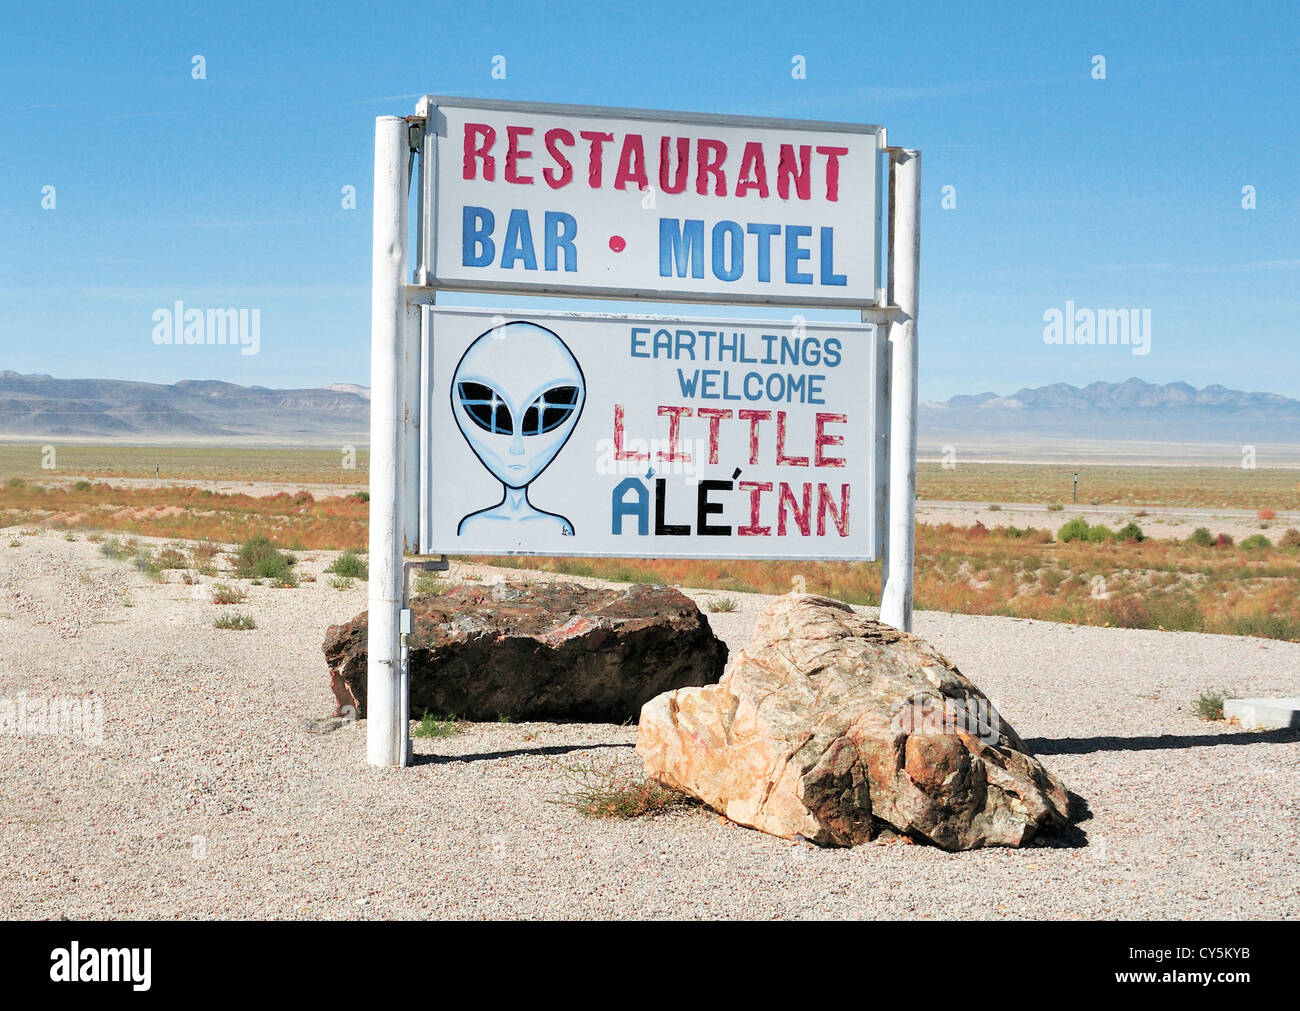 Der 'Kleine Ale 'Inn' (Alien - es bekommen?) Cafe in Rachel, Nevada, in der Nähe von 'Area 51'. Bitte parken Sie Ihr Raumschiff zurück. Stockfoto